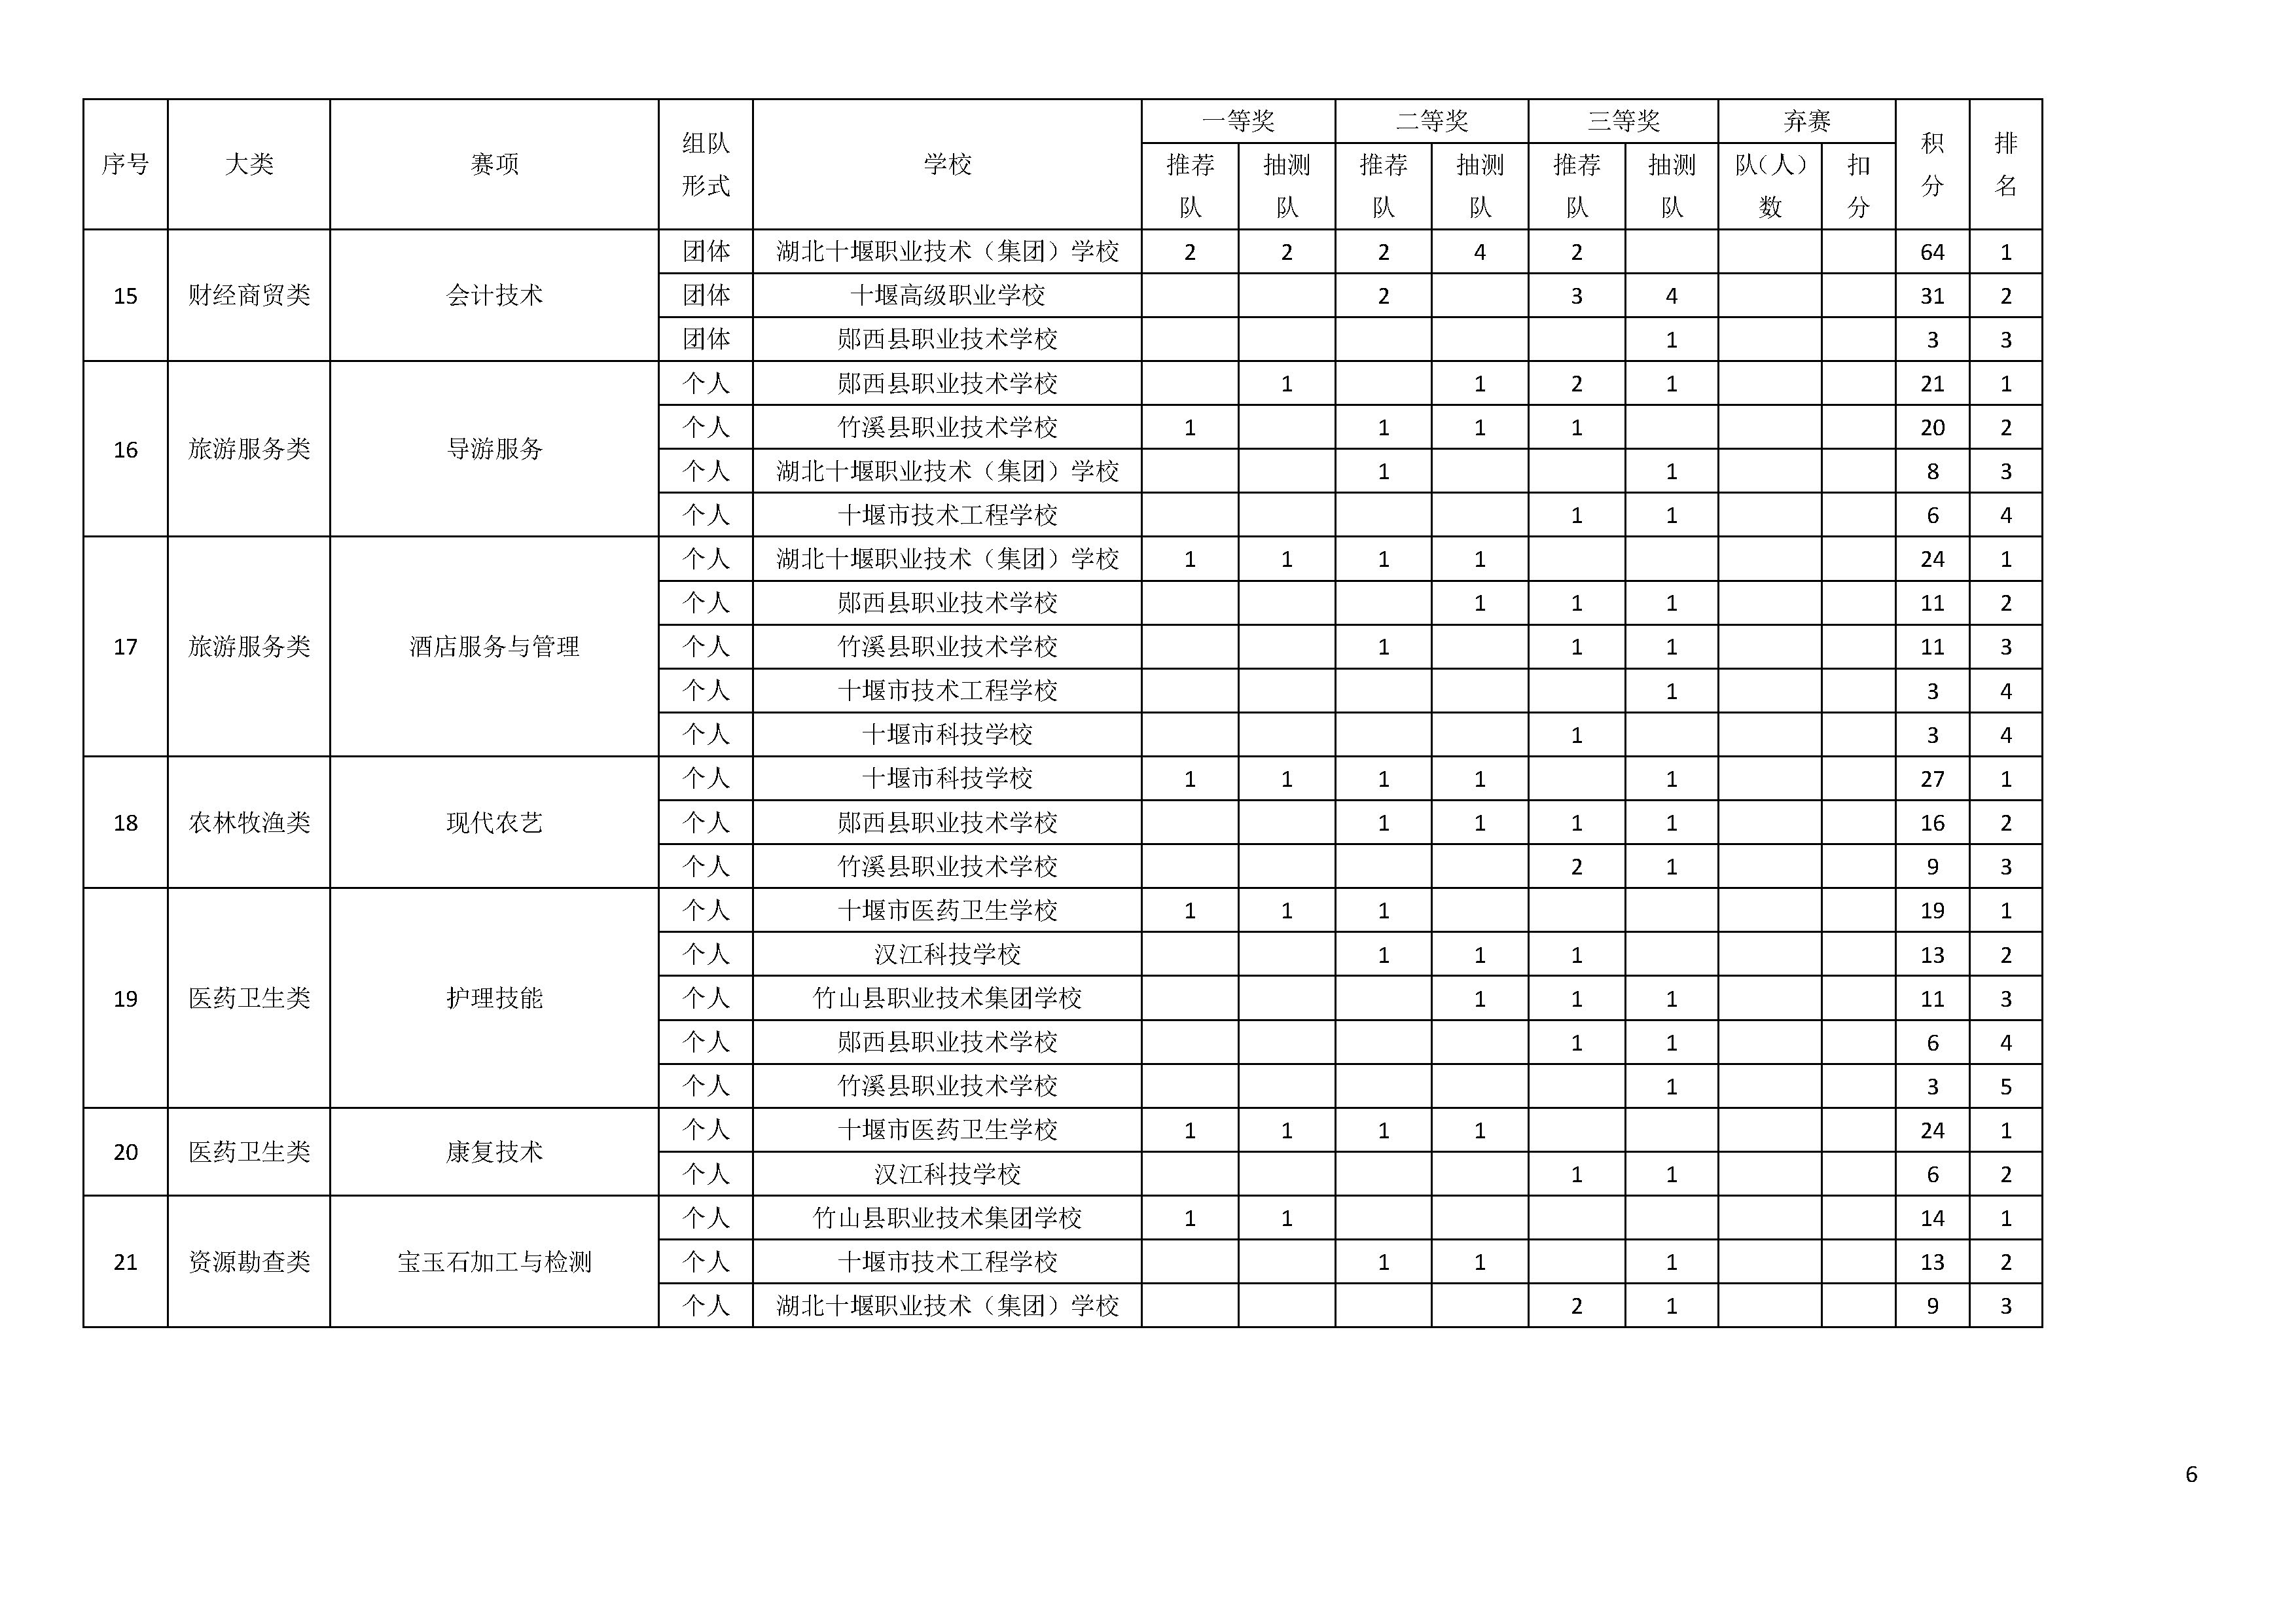 2018年湖南省中小学教师在线集体备课大赛结果公布